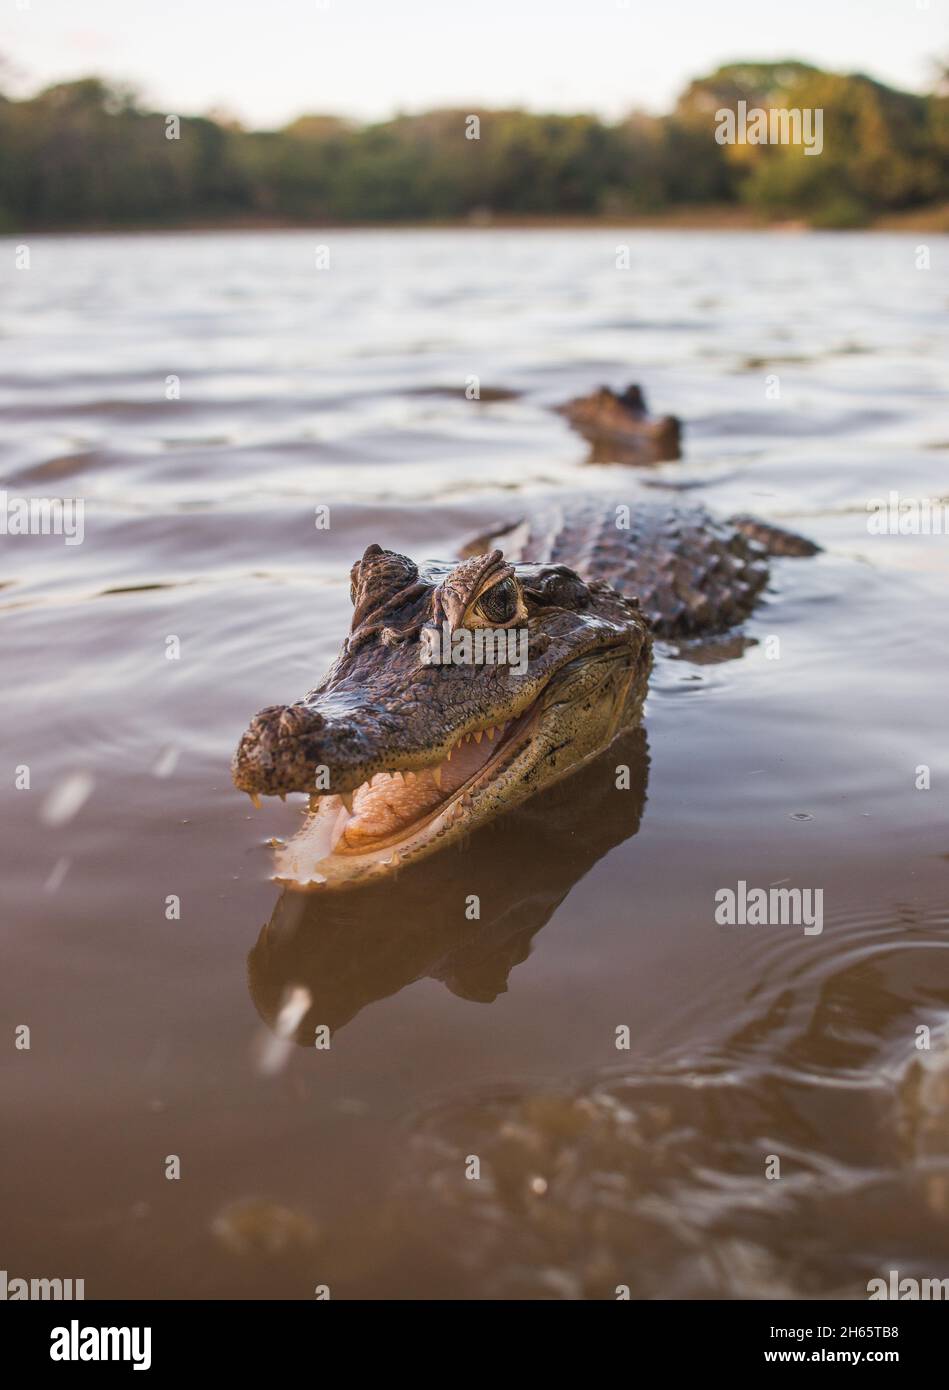 Un piccolo alligatore sorride per la macchina fotografica mentre si trova in acqua Foto Stock